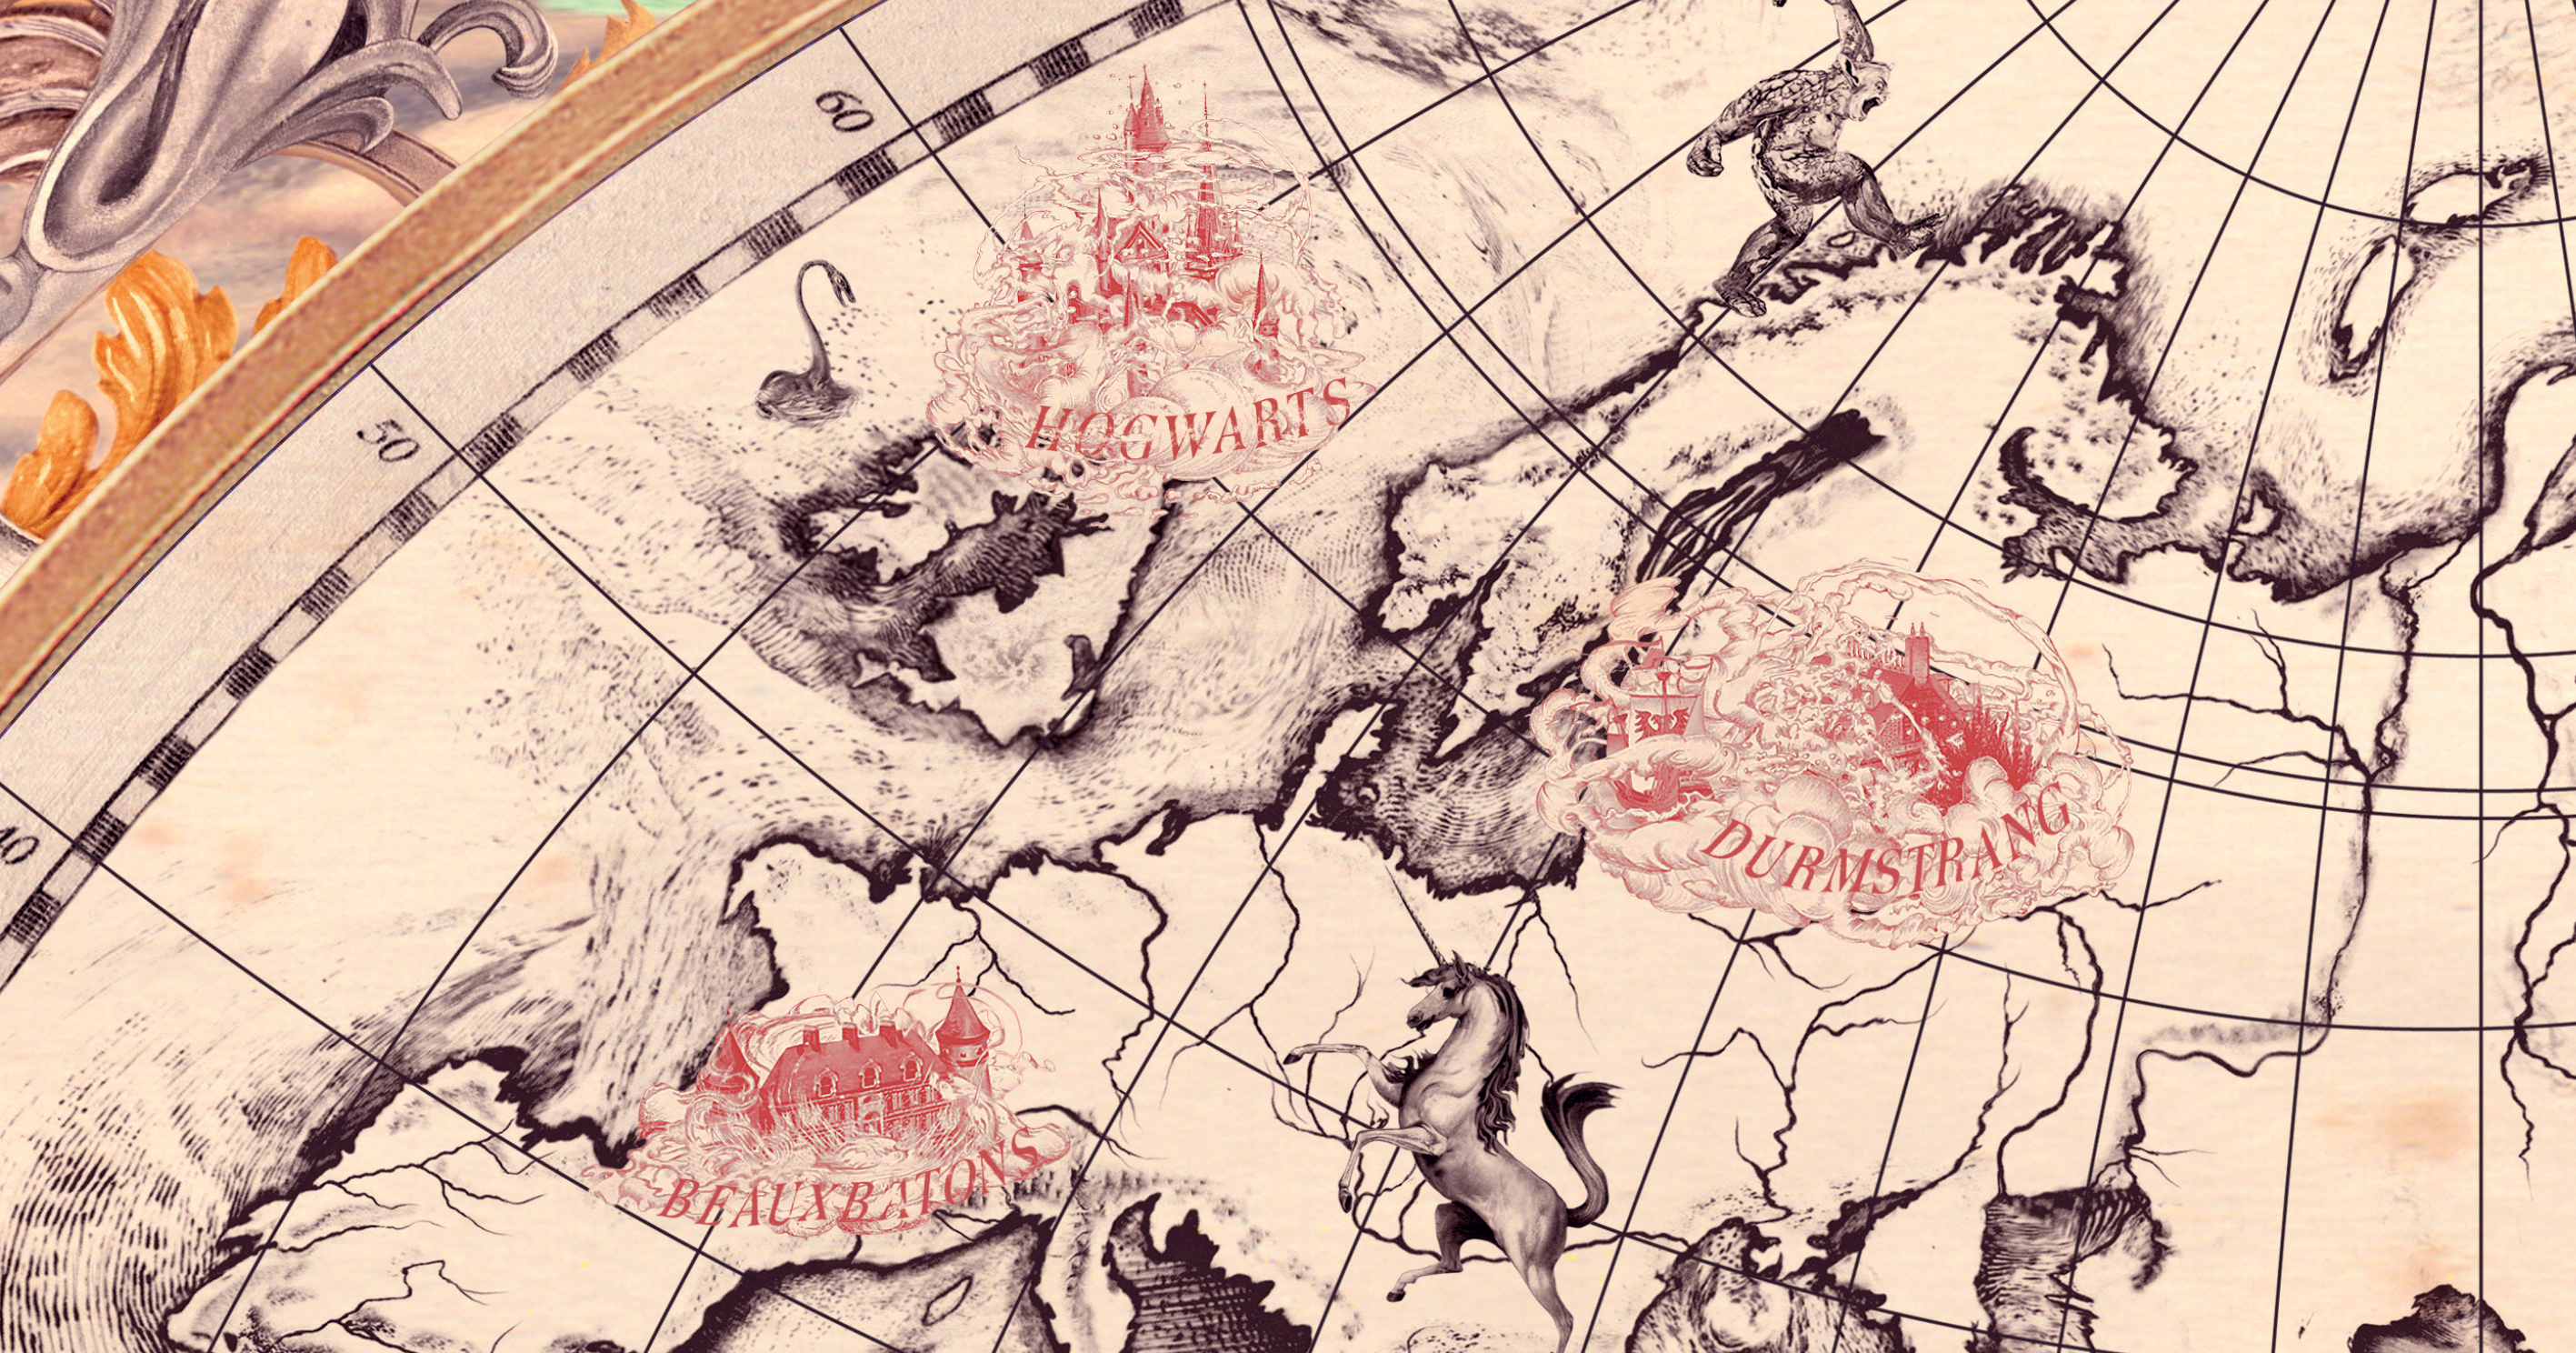 hogwarts school map